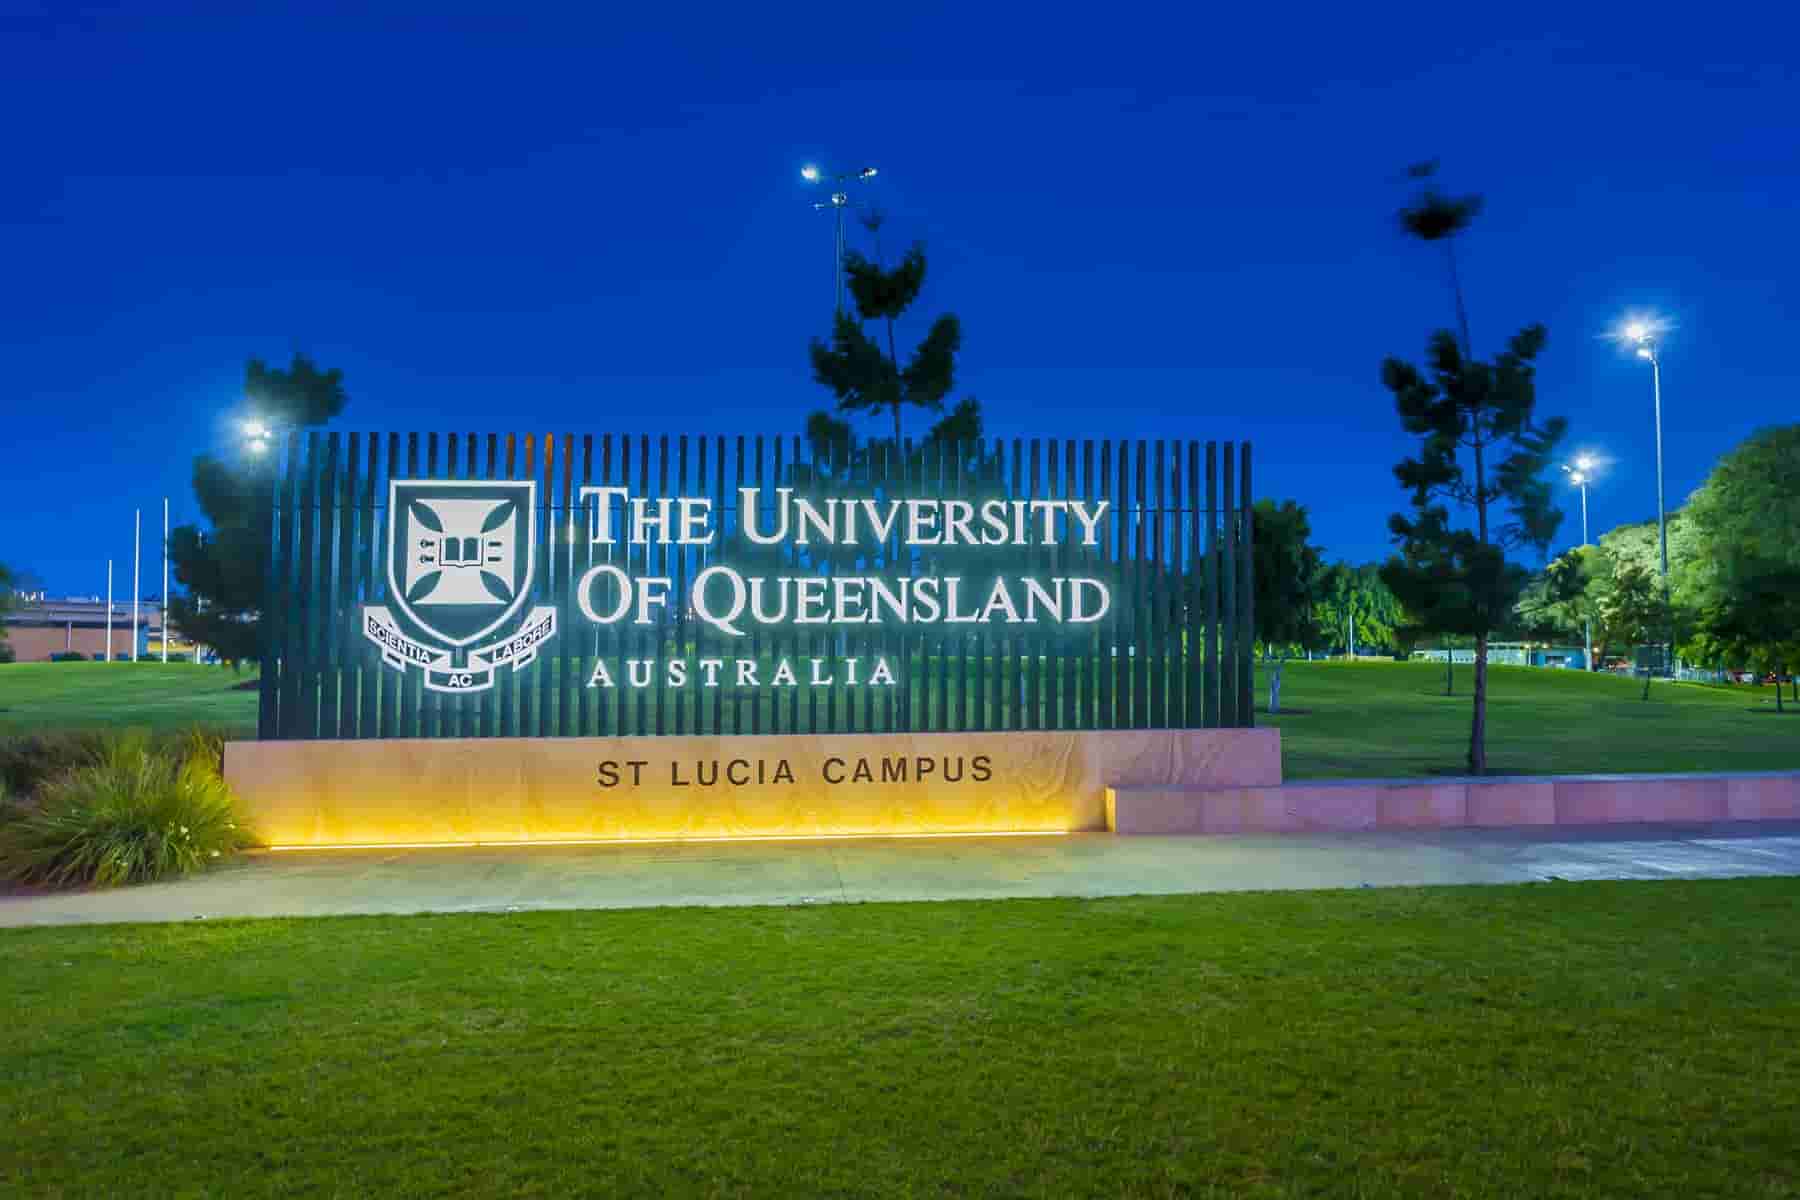 منحة جامعة كوينزلاند للحصول على الدكتوراه في أستراليا (ممولة بالكامل)